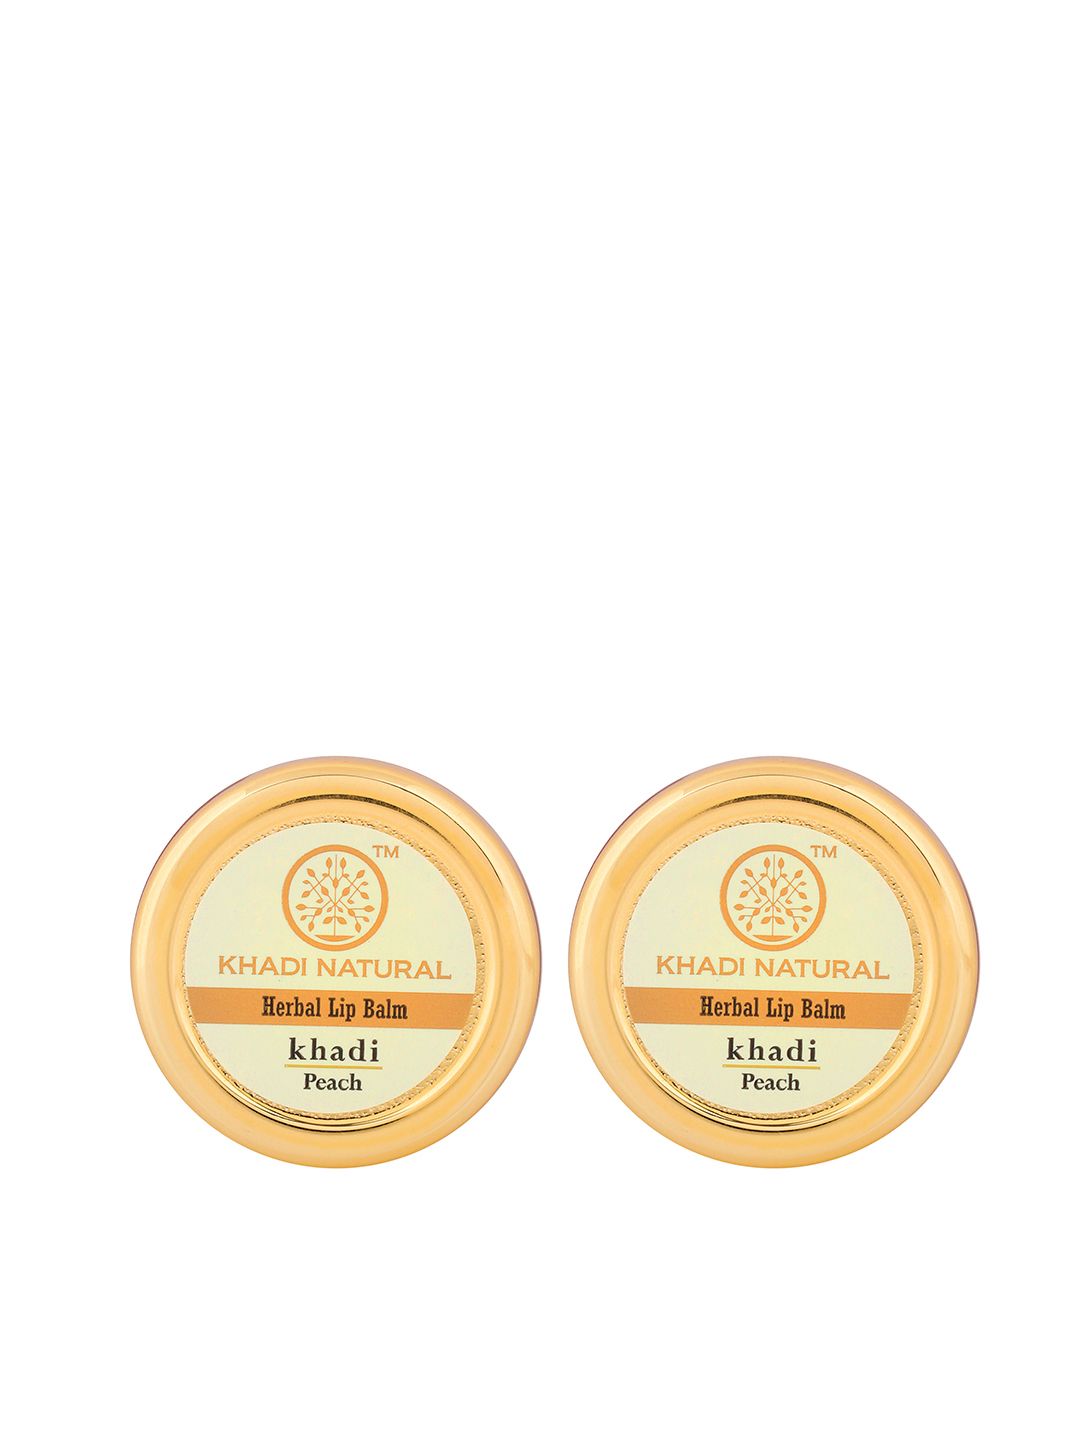 Khadi Natural Set of 2 Herbal Lip Balm - Peach Price in India